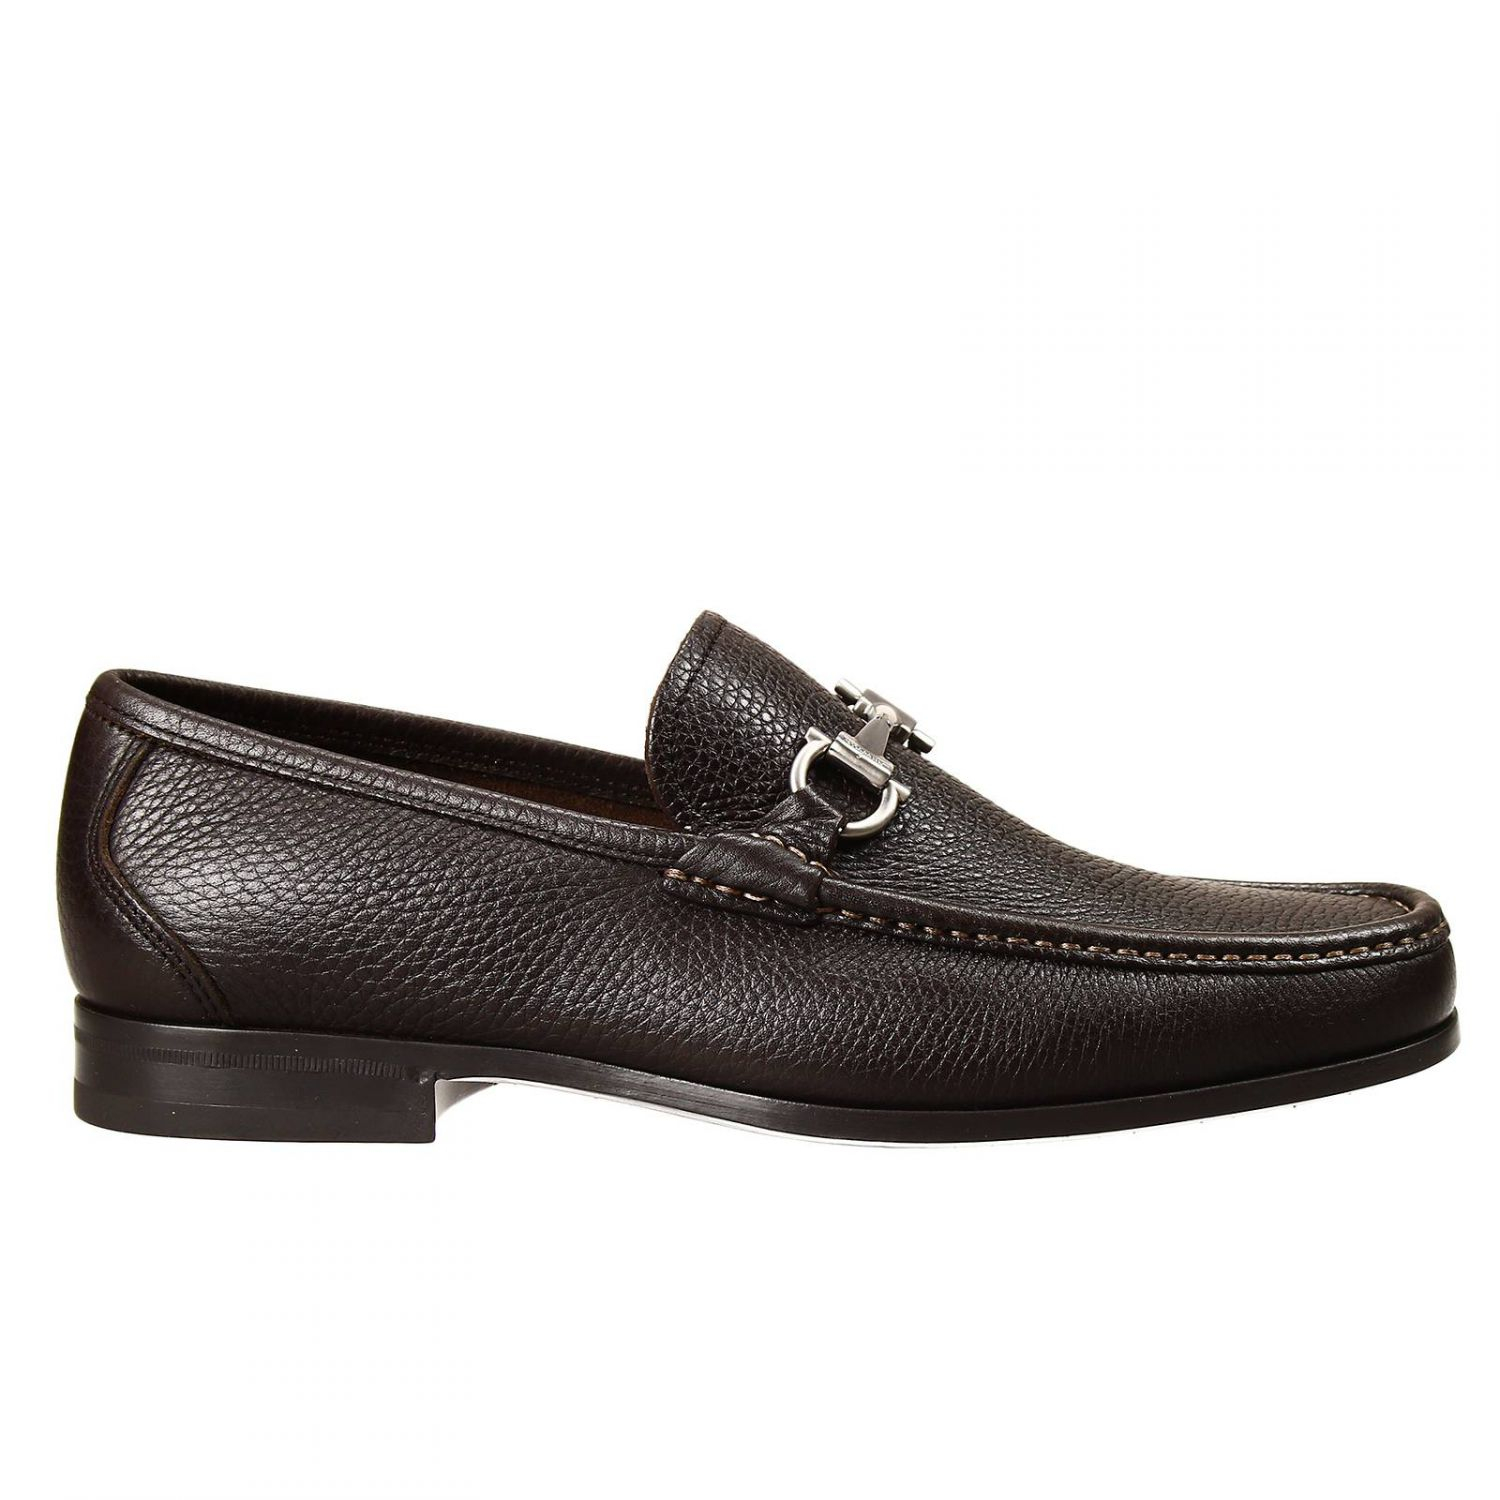 Ferragamo Shoes Magnifico Loafer Leather Sole Rubber Sole With Doppio ...